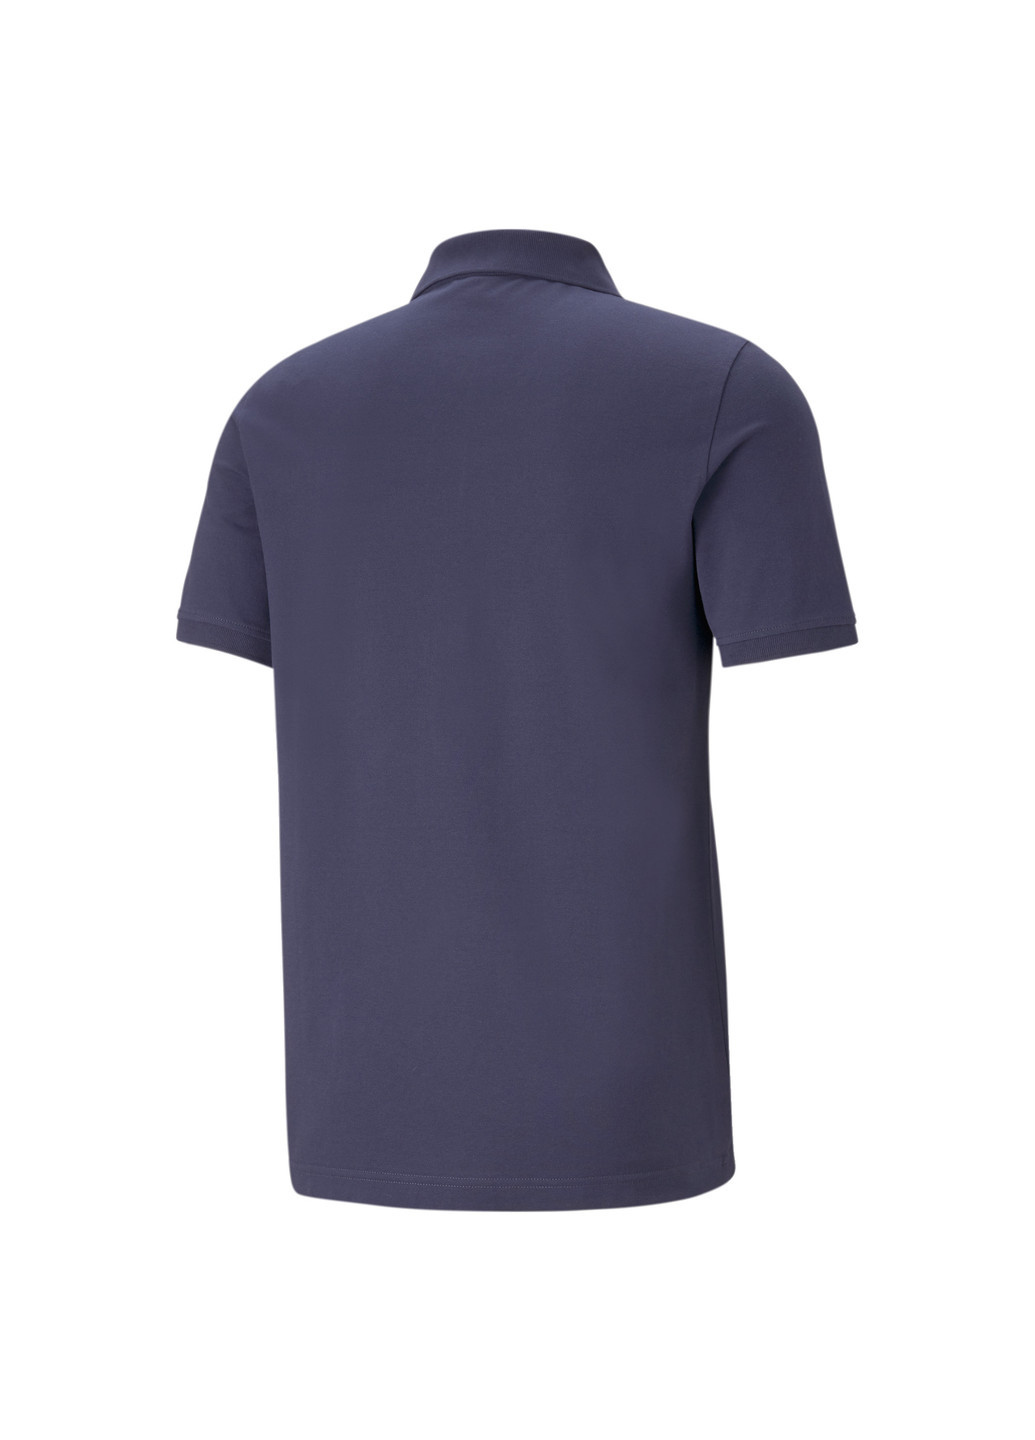 Синяя футболка-поло essentials pique men's polo shirt для мужчин Puma однотонная